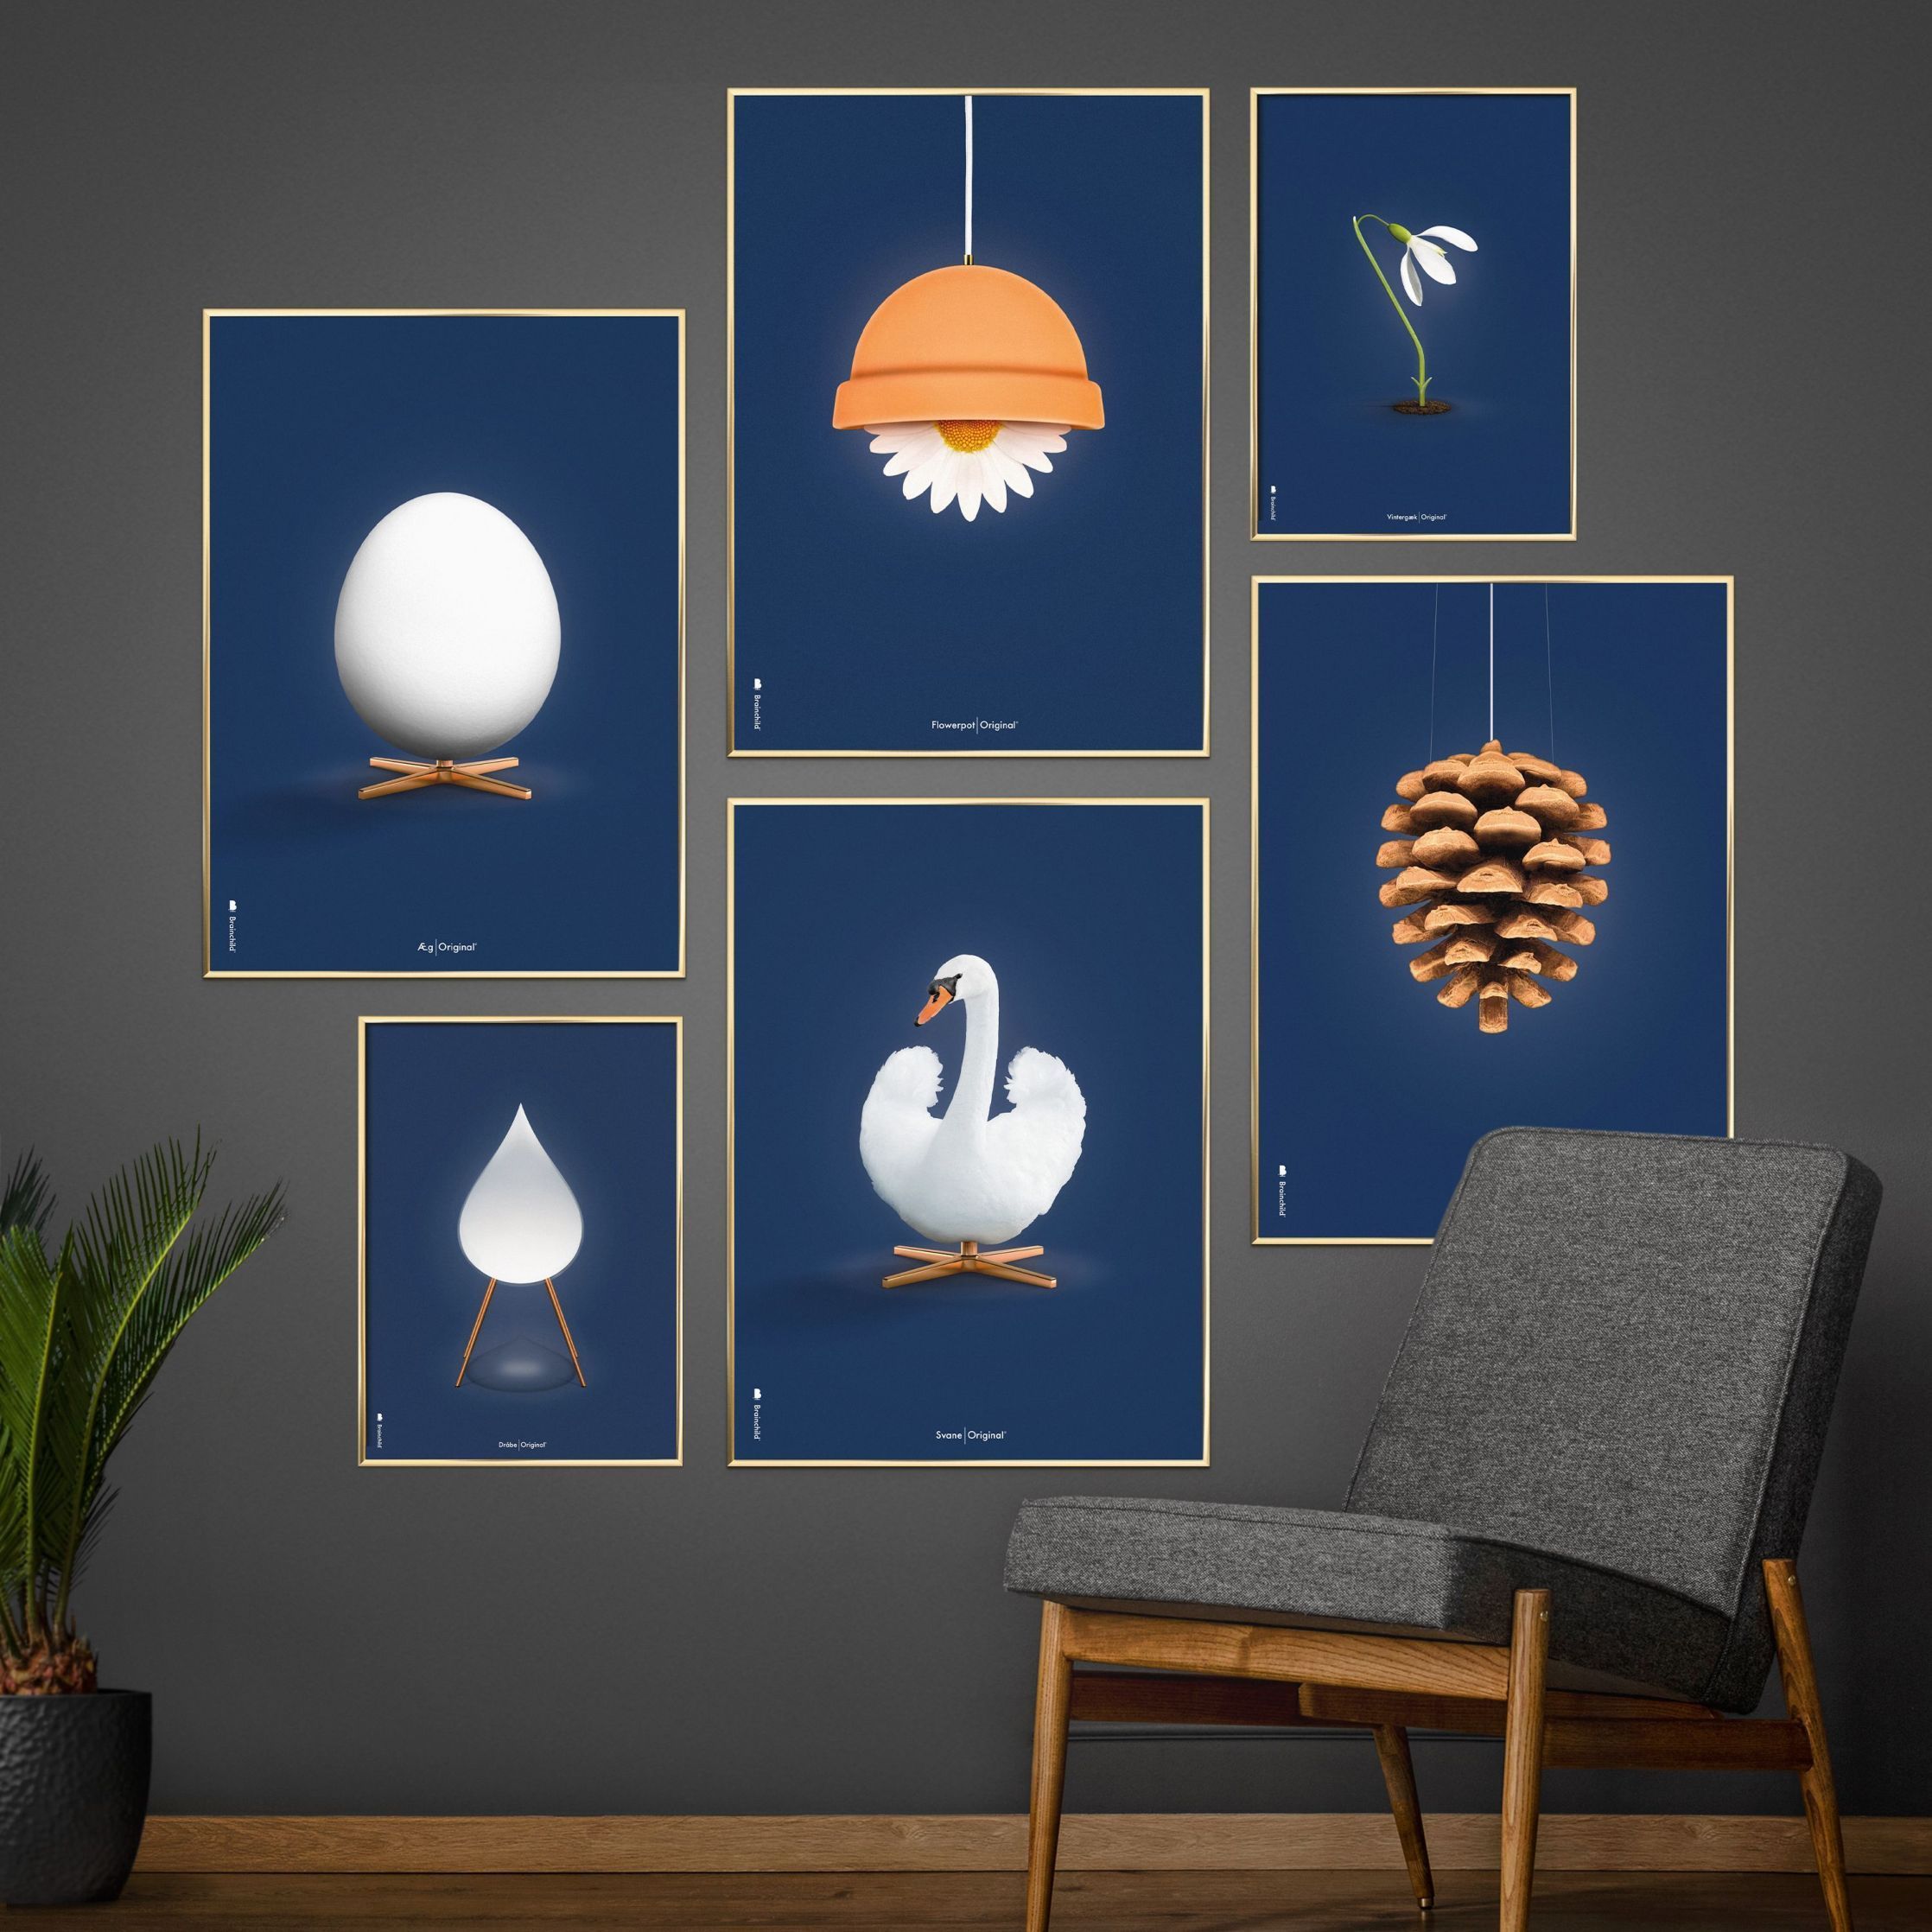 Brainchild Flowerpot Classic Poster, frame gemaakt van licht hout 30x40 cm, donkerblauwe achtergrond